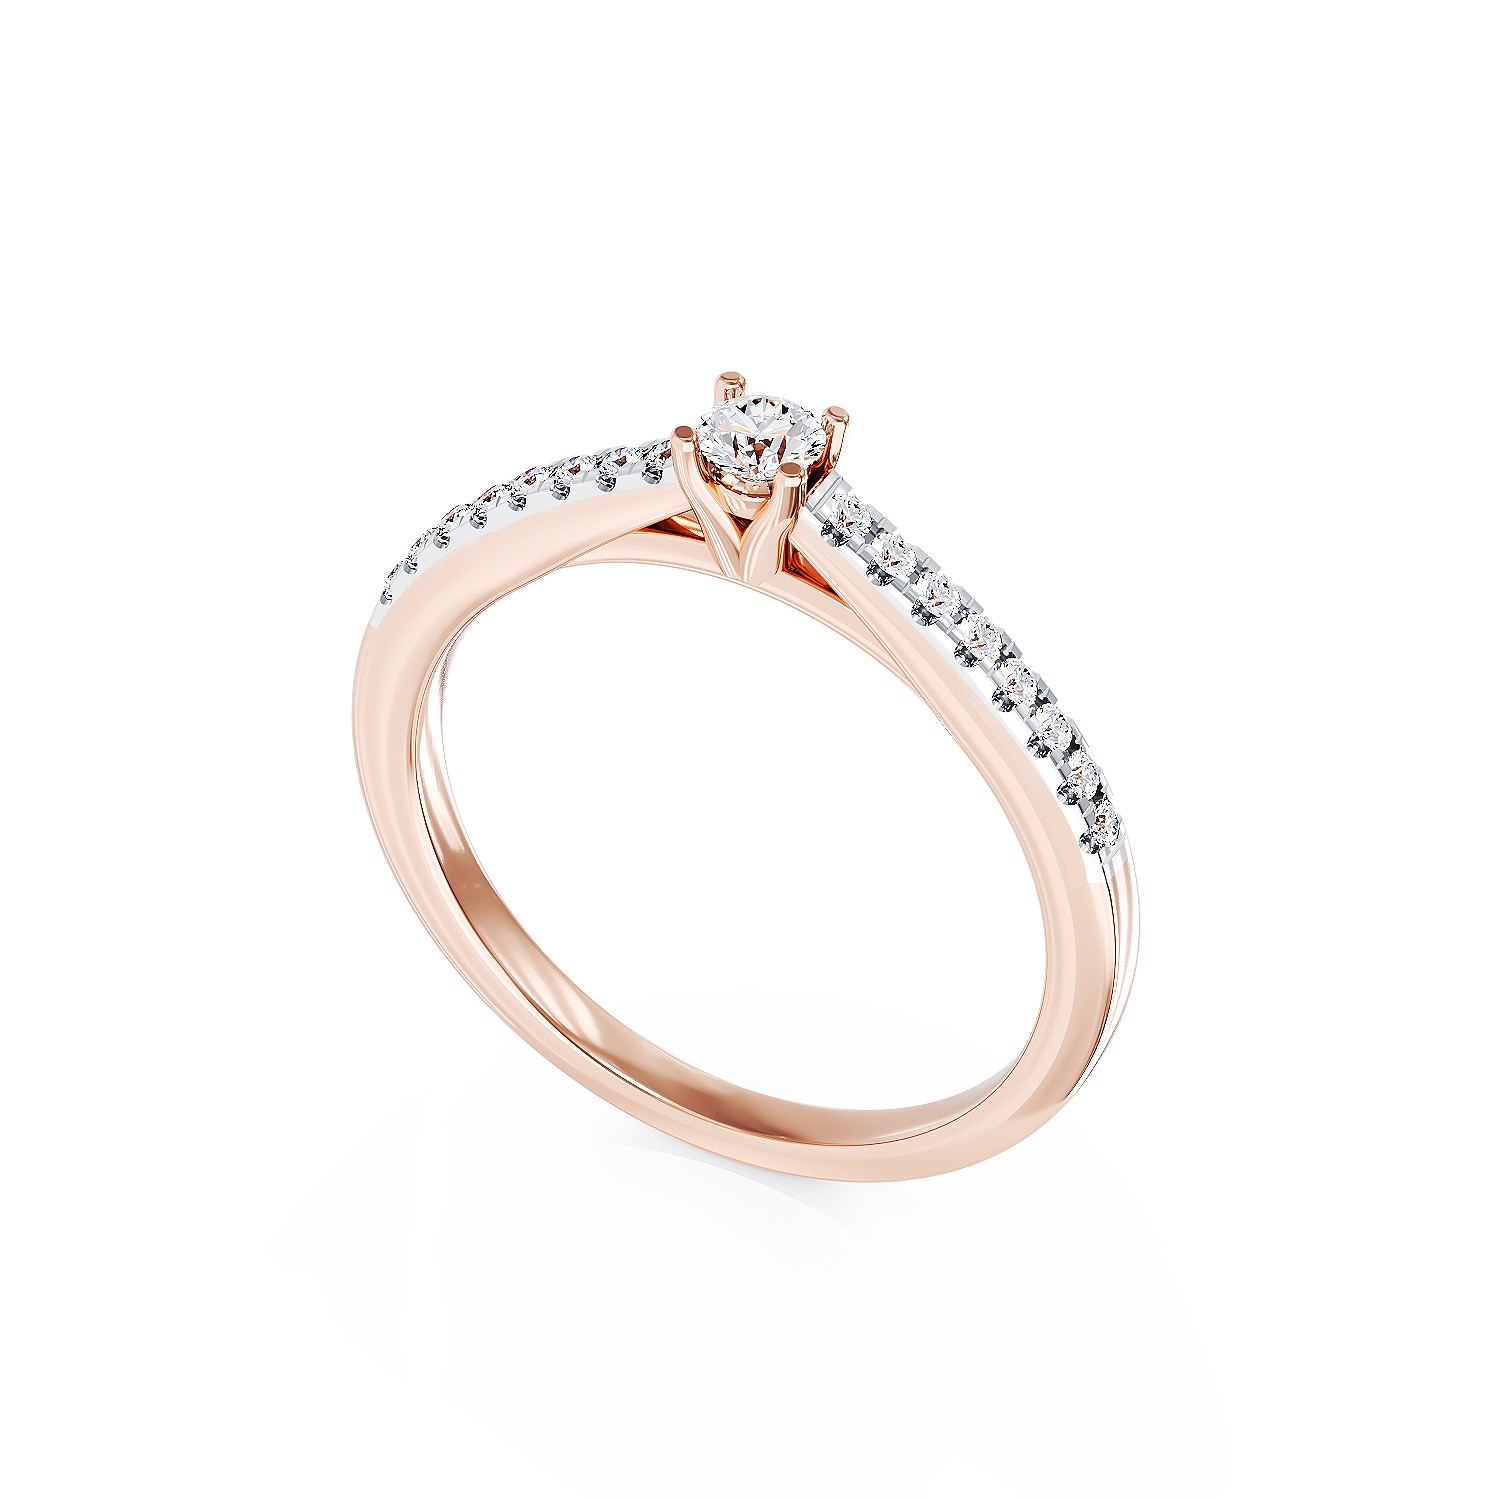 Eljegyzési gyűrű 18K-os rózsaszín aranyból 0,2ct gyémánttal és 0,185ct gyémánttal. Gramm: 2,85